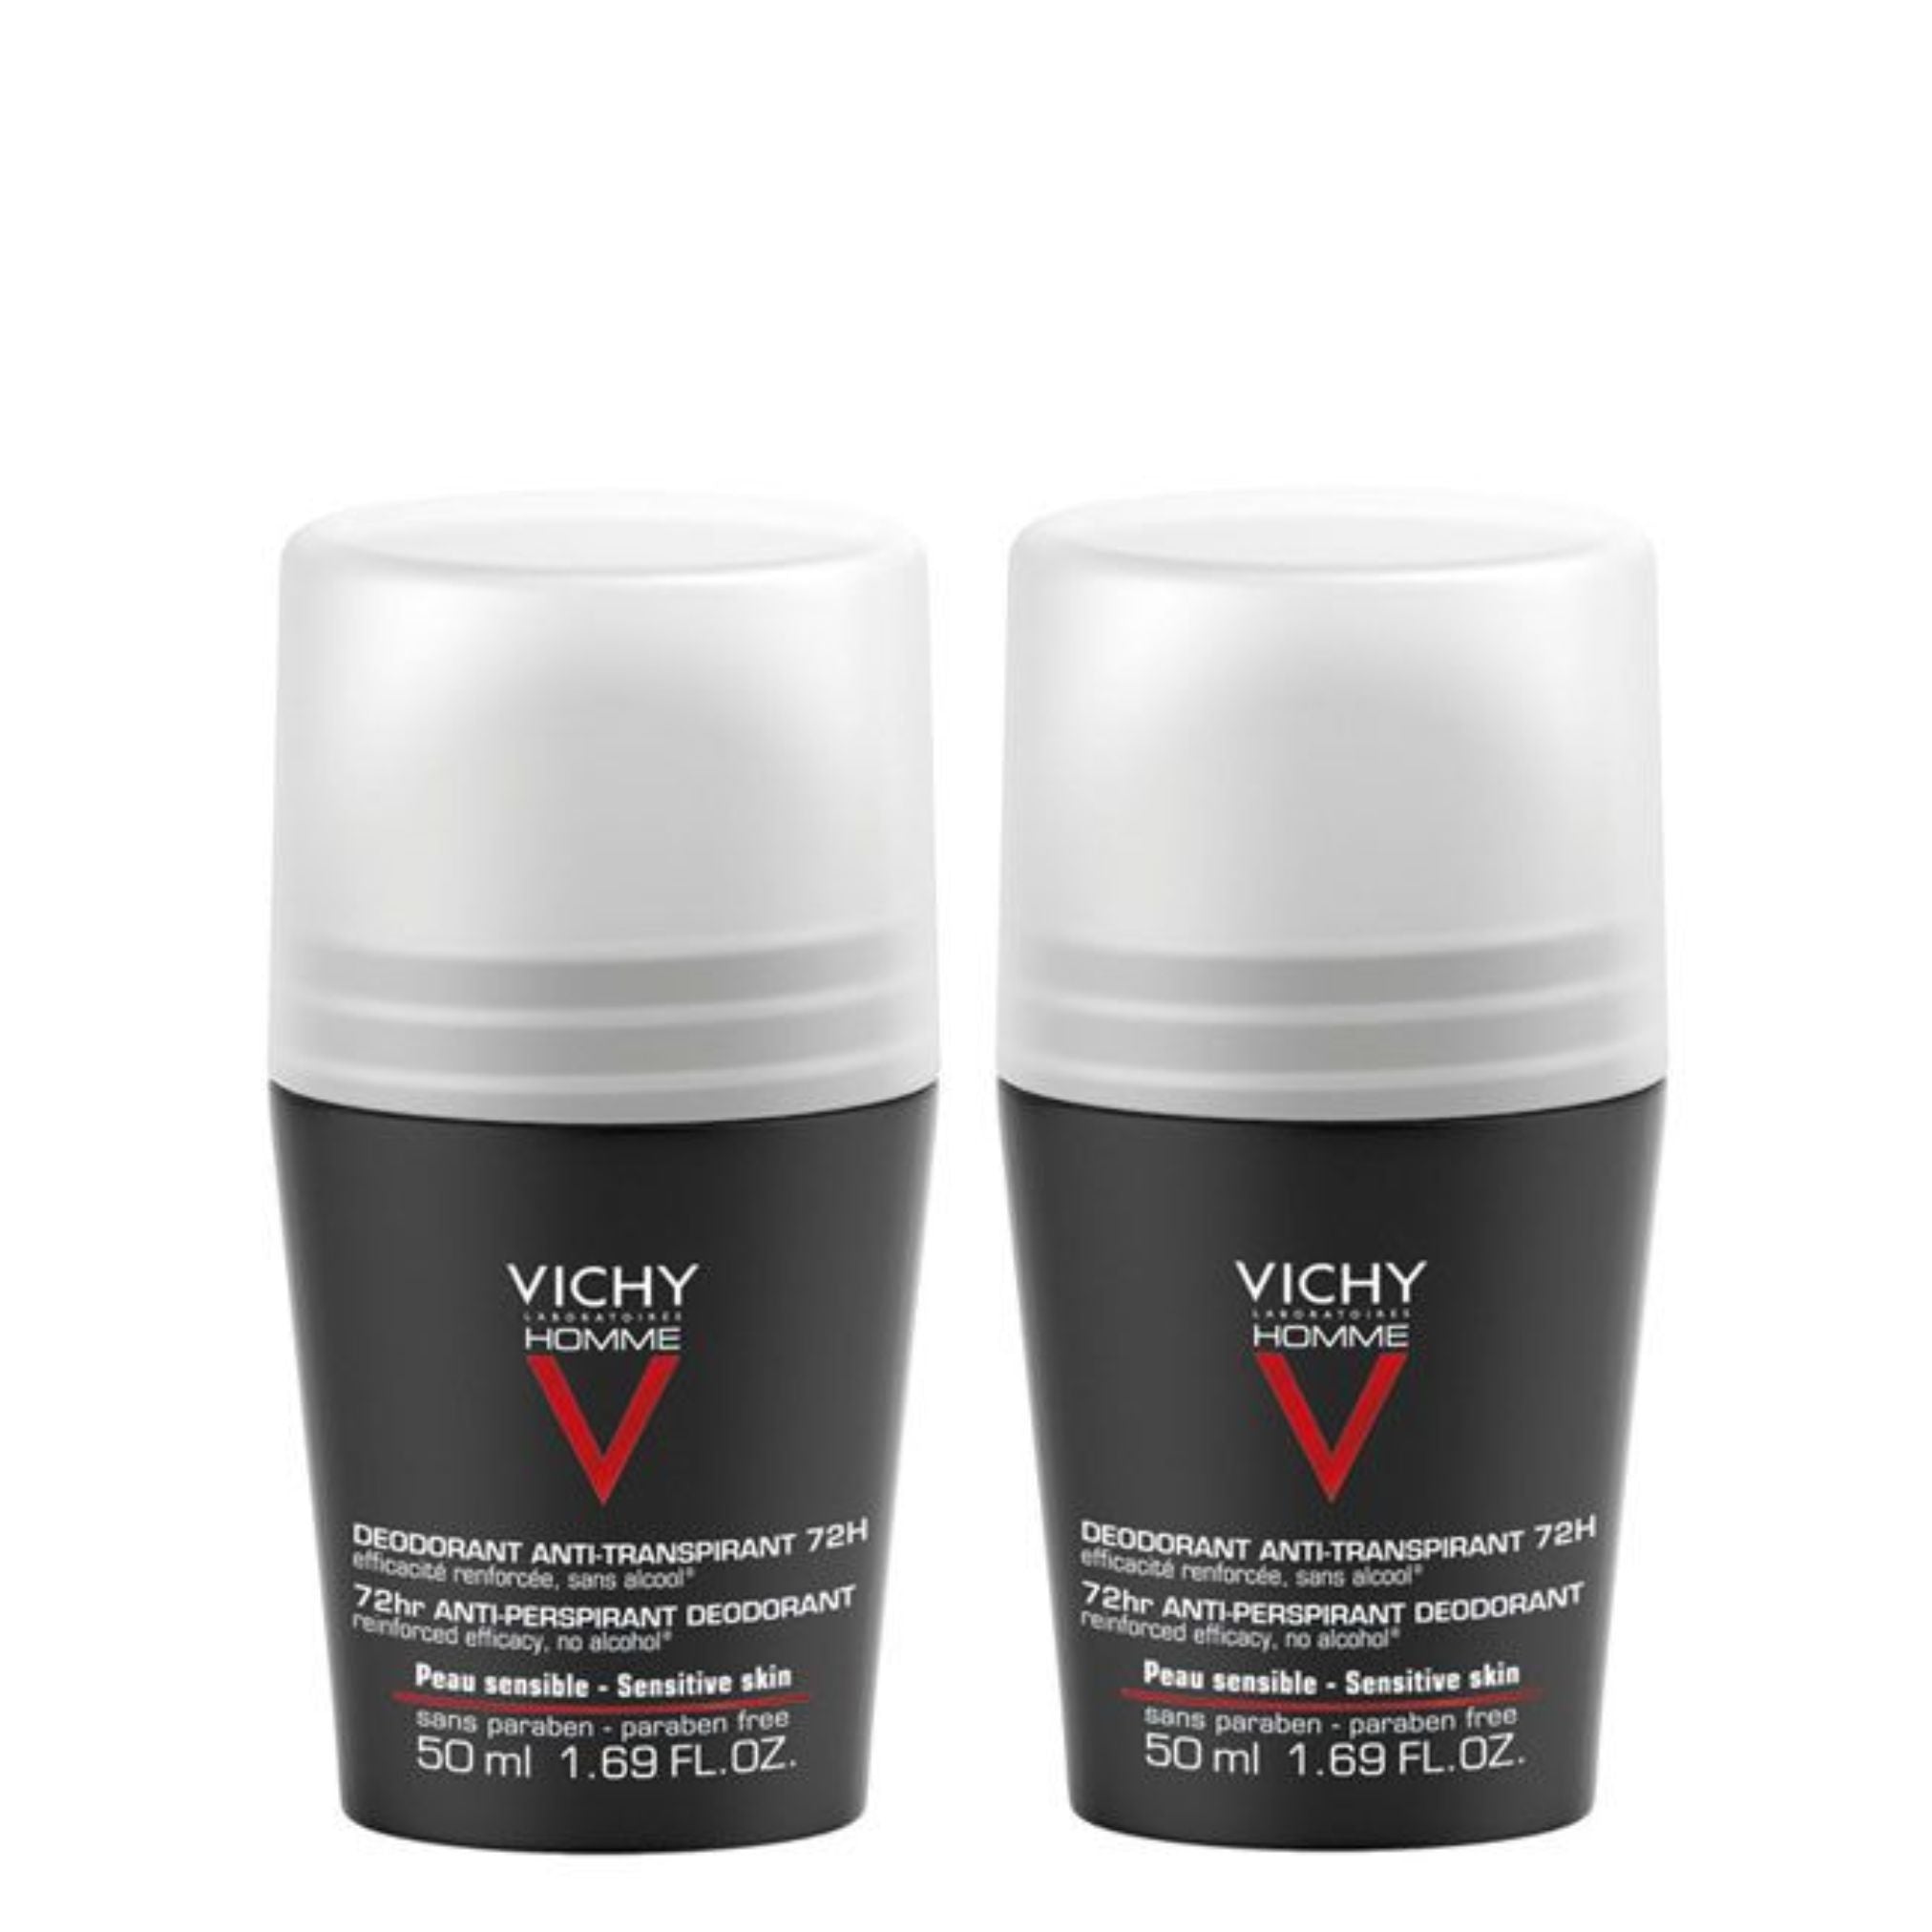 Vichy Pack Promocional: Vichy Homme Desodorizante Antitranspirante 72h 2x50ml